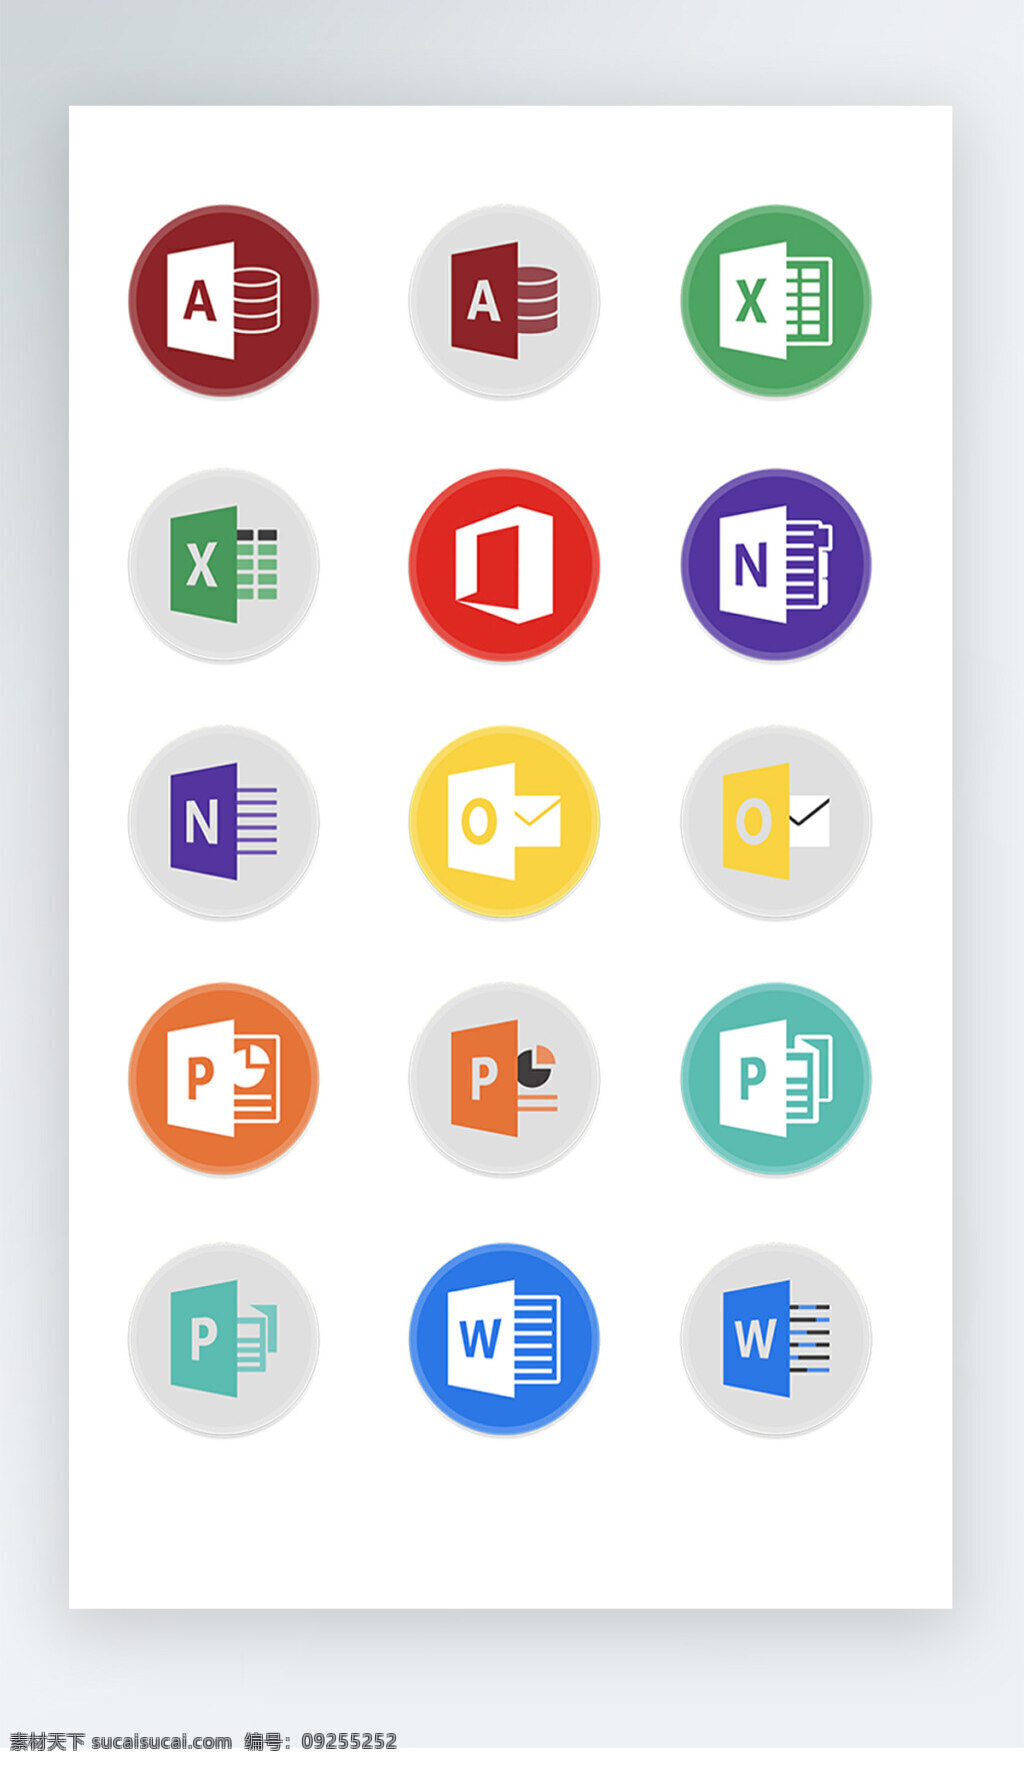 办公软件 图标 彩色 写实 图标素材 办公软件图标 彩色写实 word